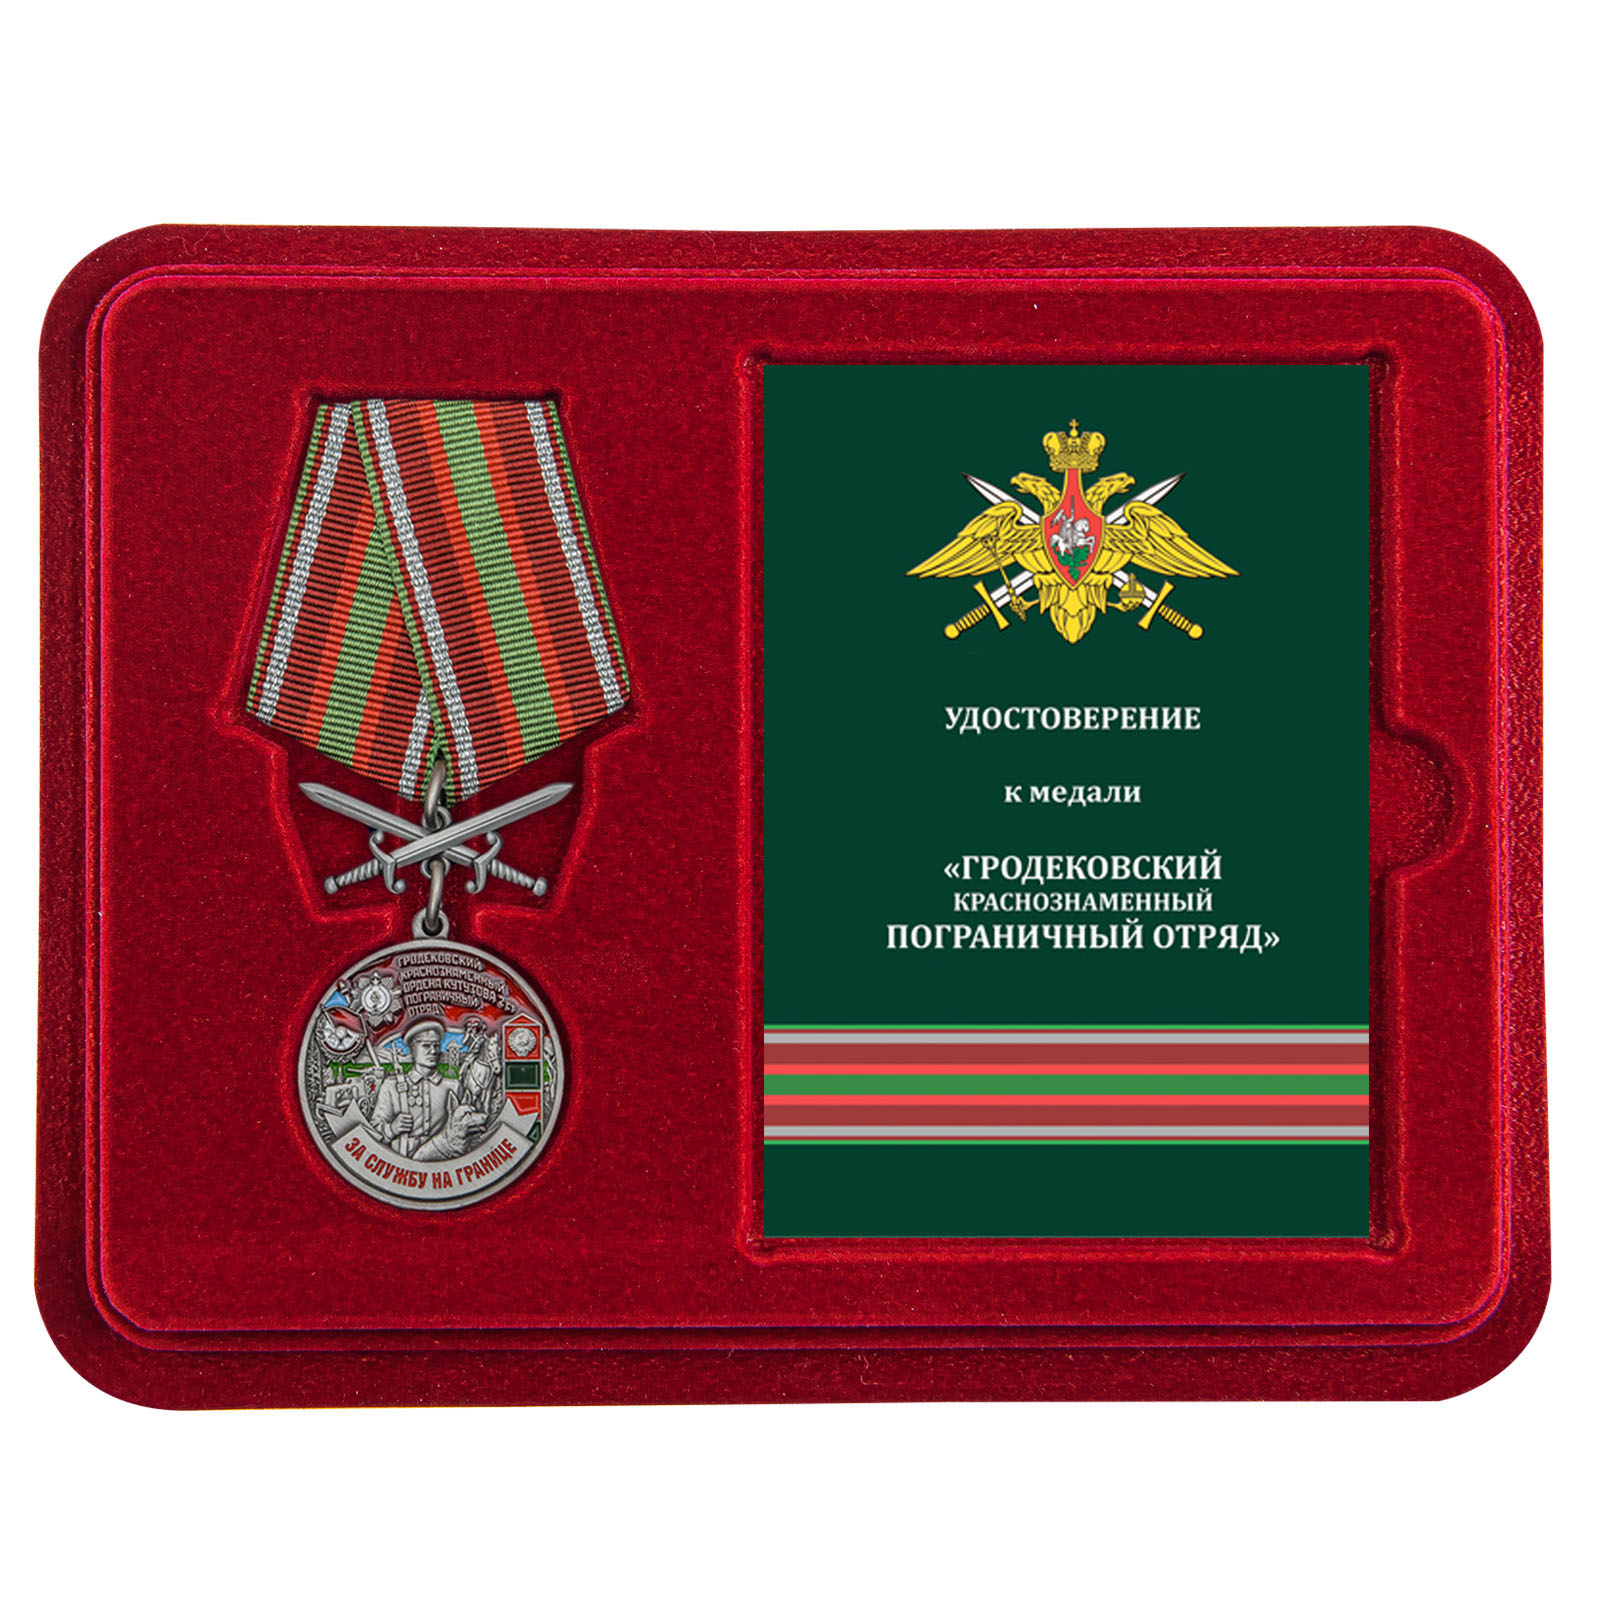 Купить медаль За службу в Гродековском пограничном отряде с доставкой